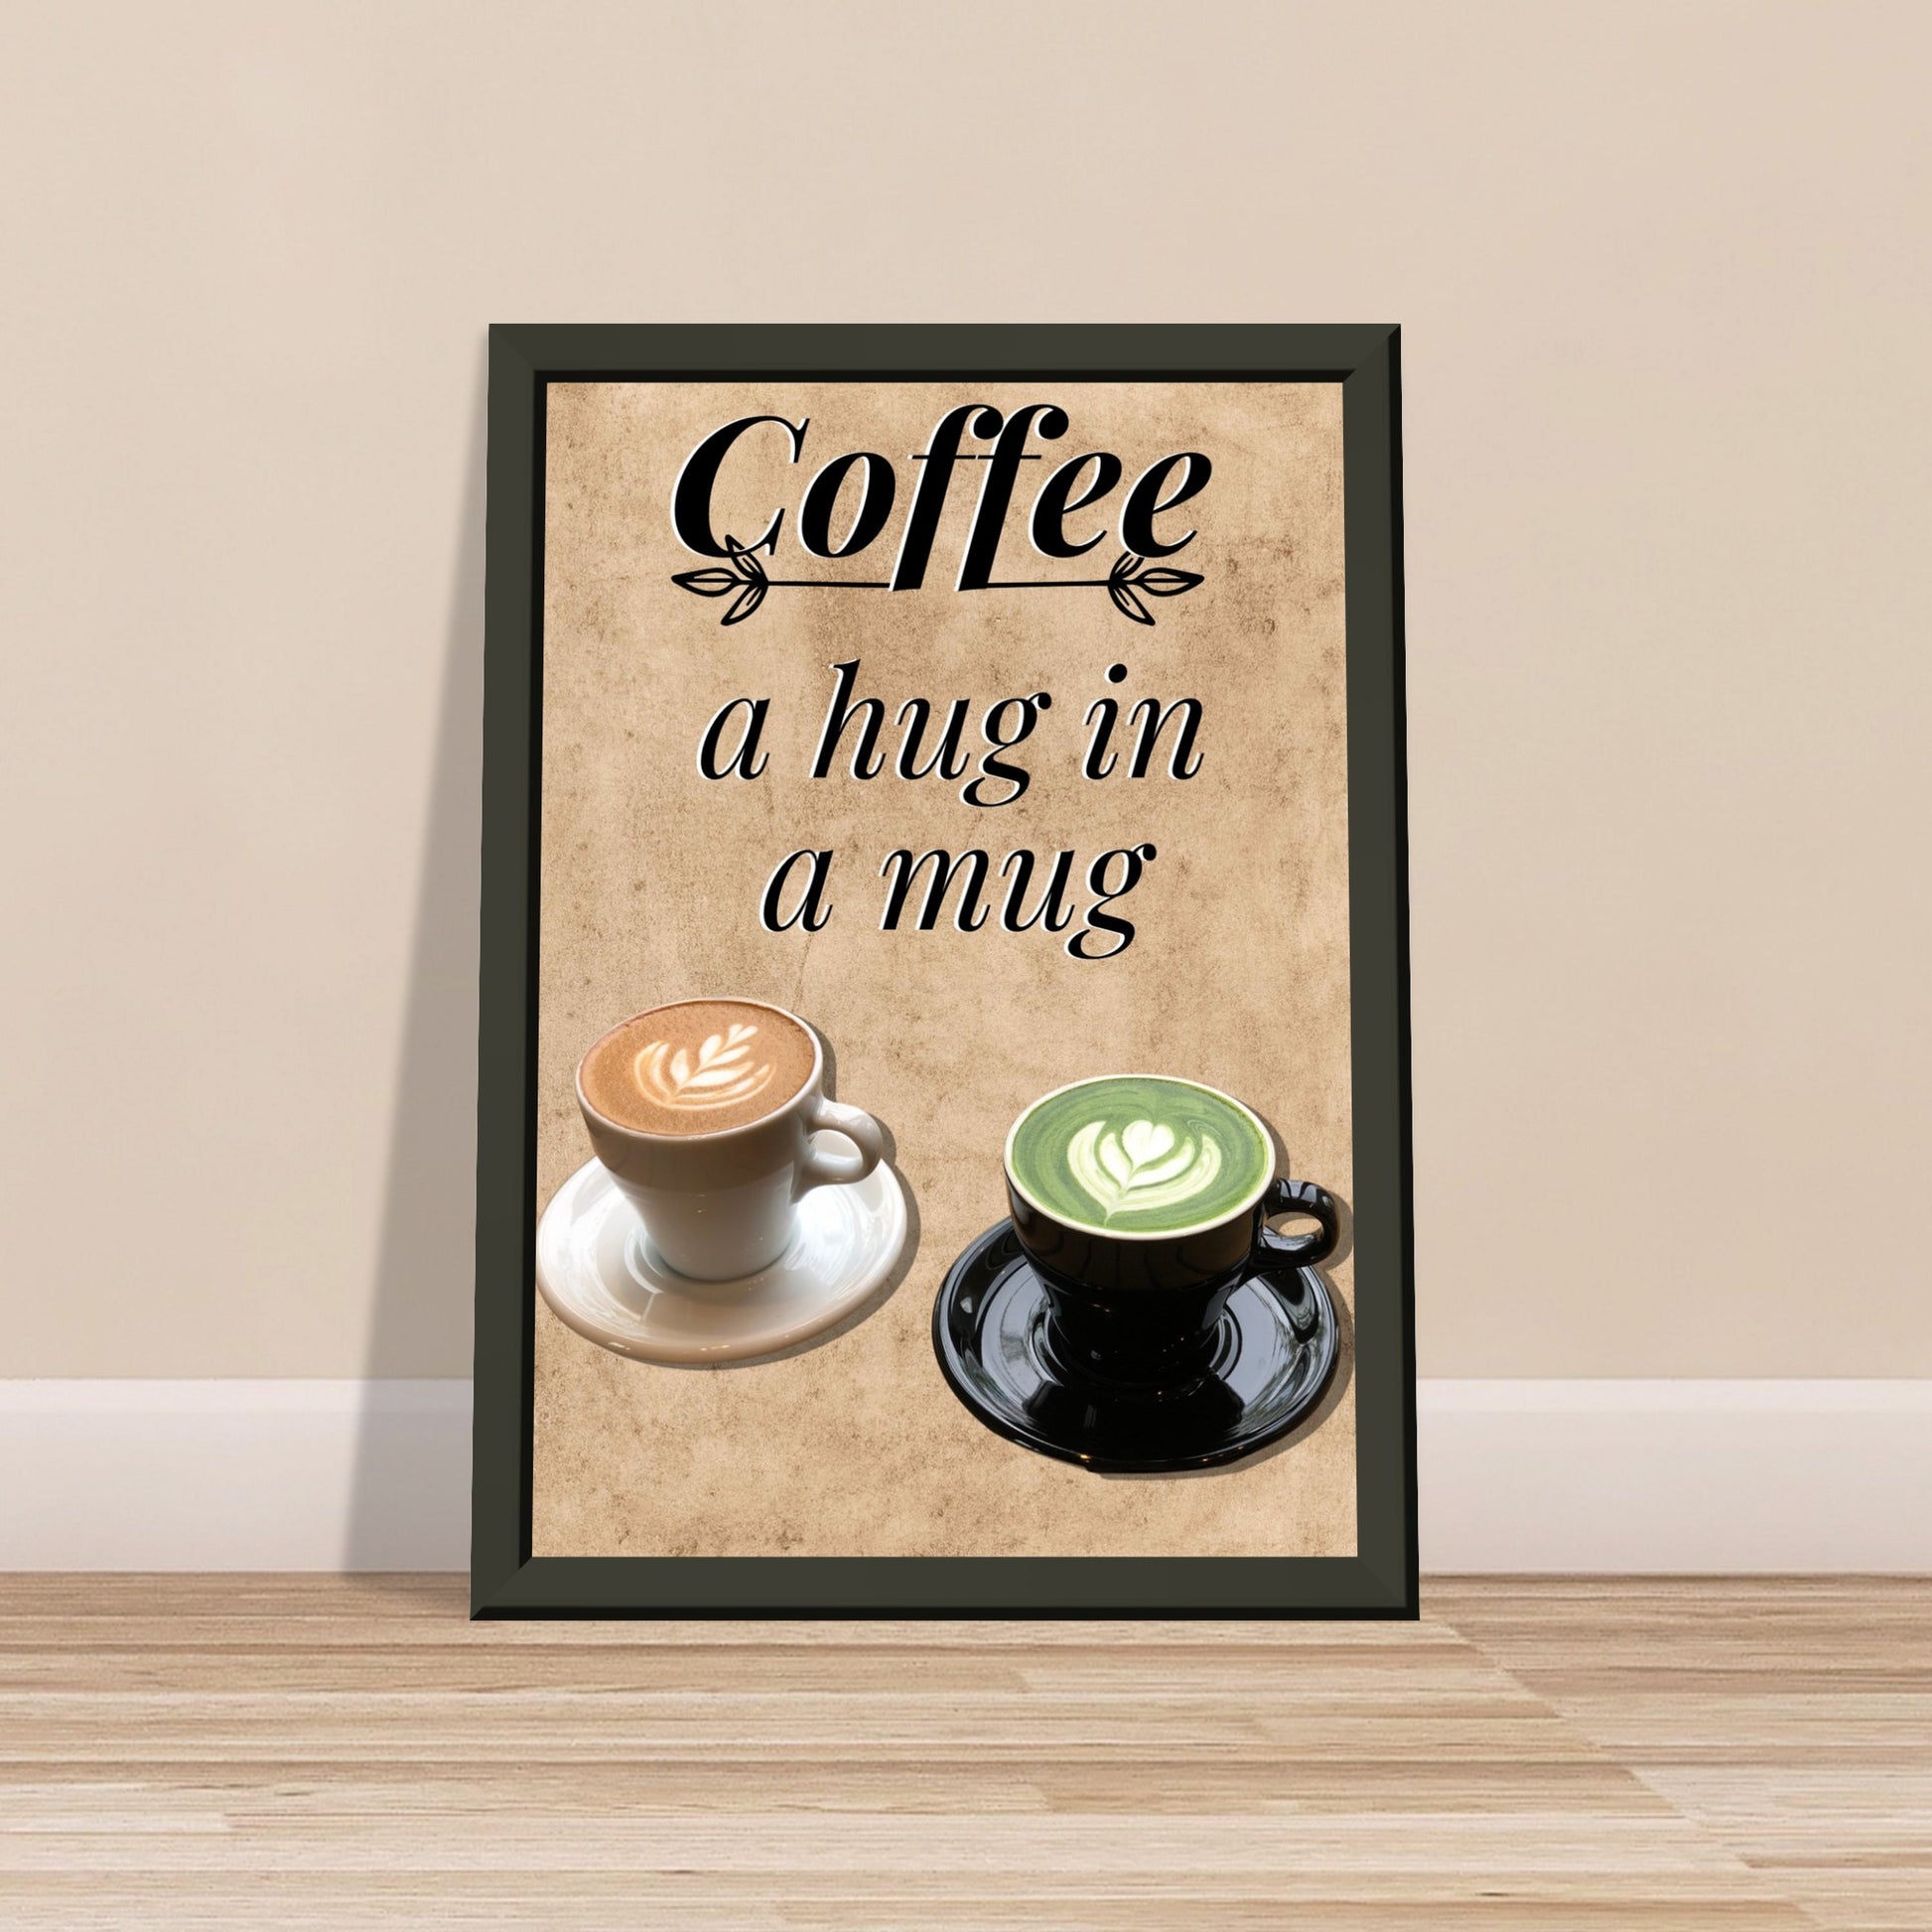 Eingerahmtes Bild mit der Überschrift: "Coffee" und dem Titel: "a hug in a mug" mit zwei Tassen Kaffee auf einem Beigen Hintergrund an einer Beigen Wand lehnend 